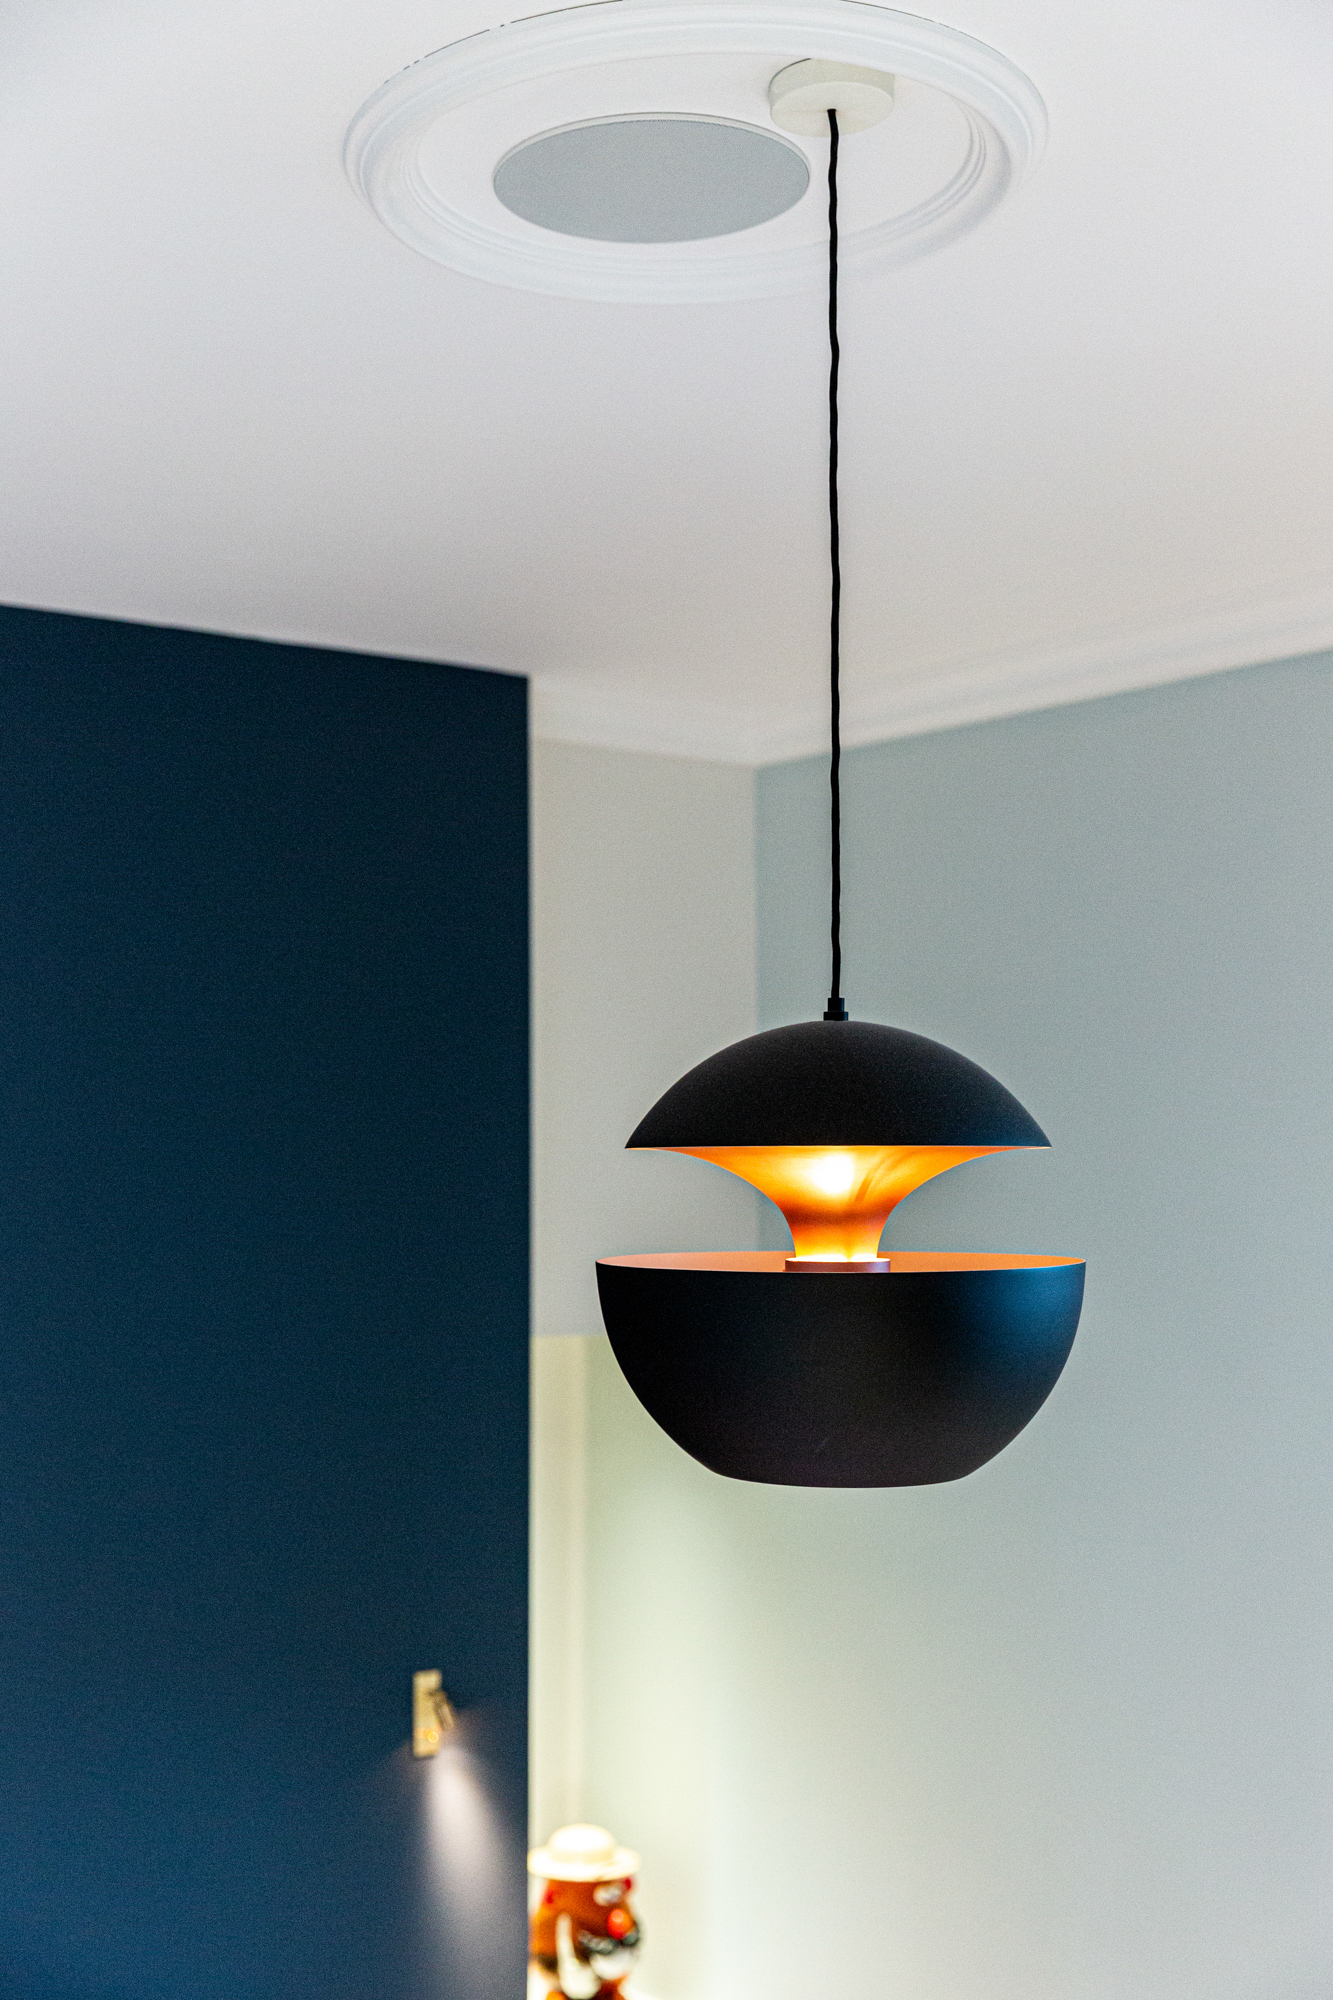 Lampe ronde bleue foncée, dans une chambre. Photographie design et décoration.